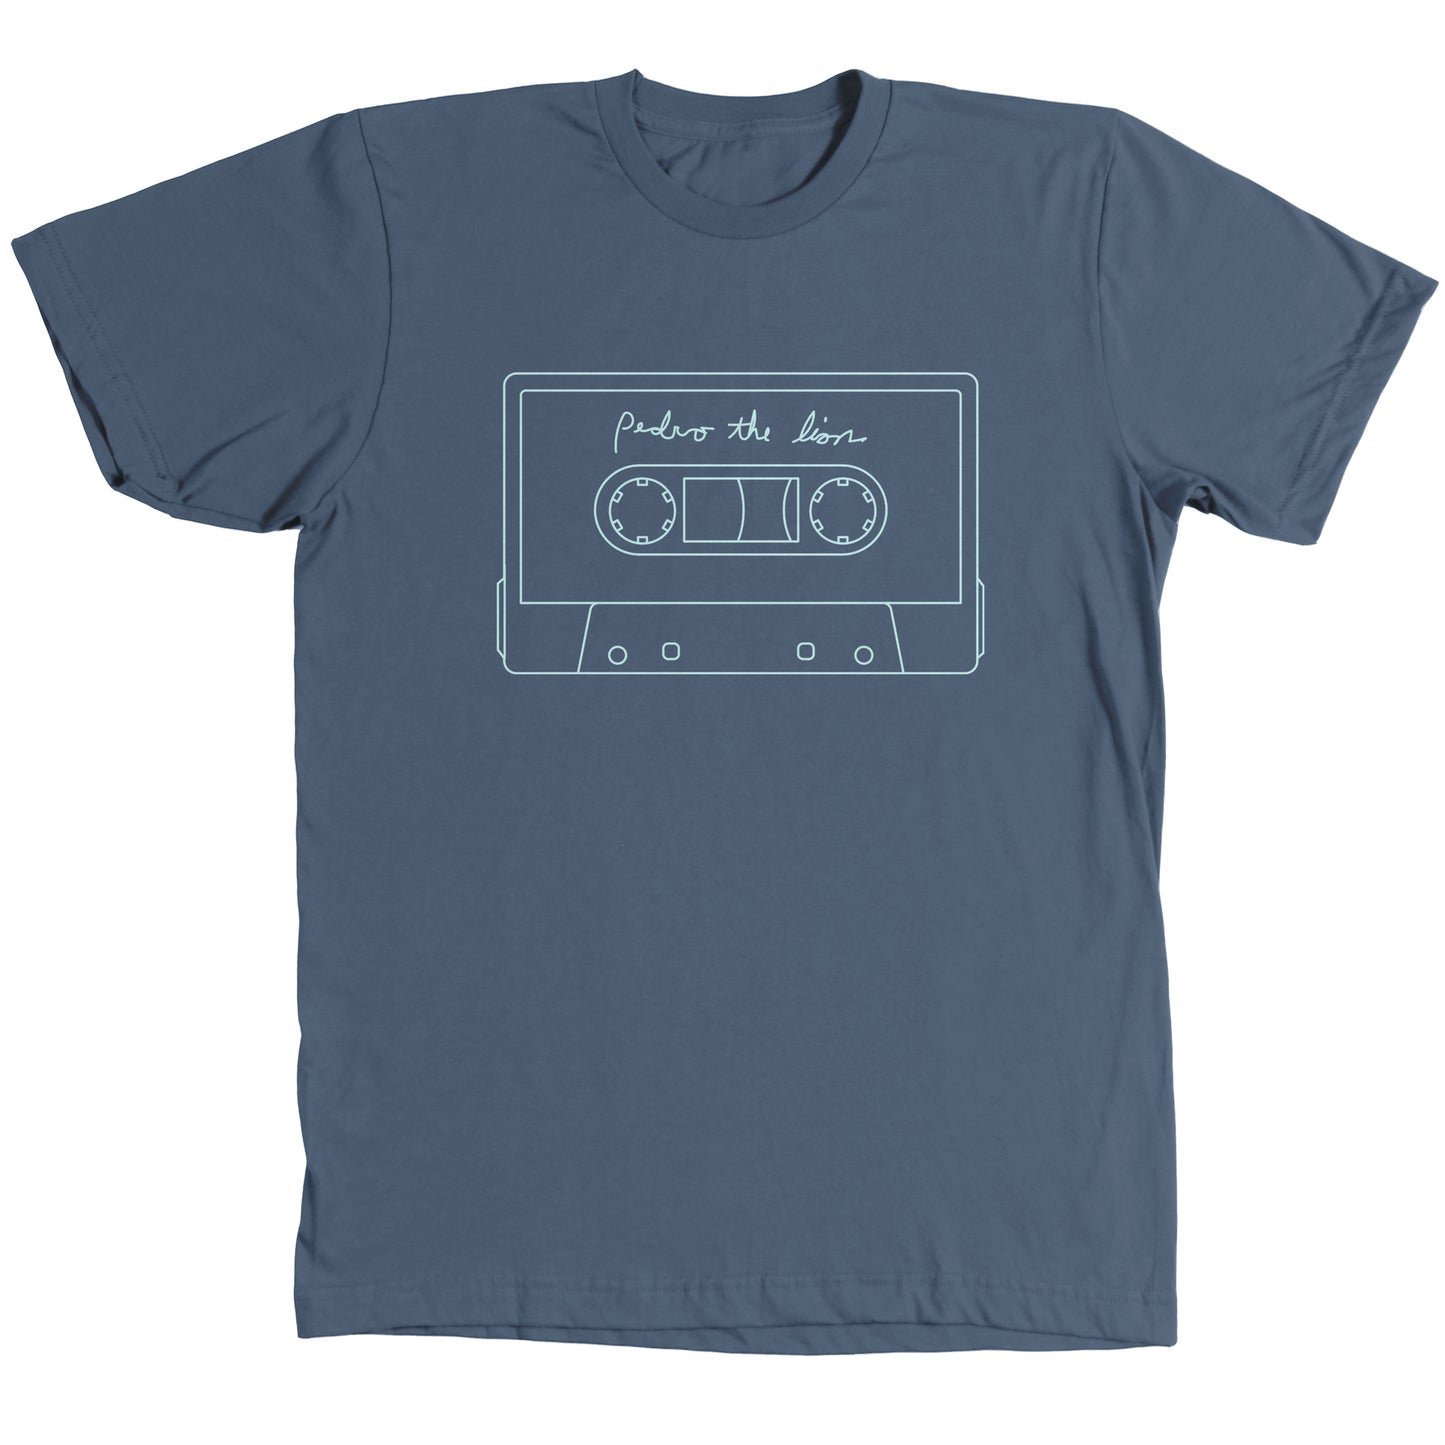 Santa Cruz Cassette Tape Shirt - INDIGO BLUE